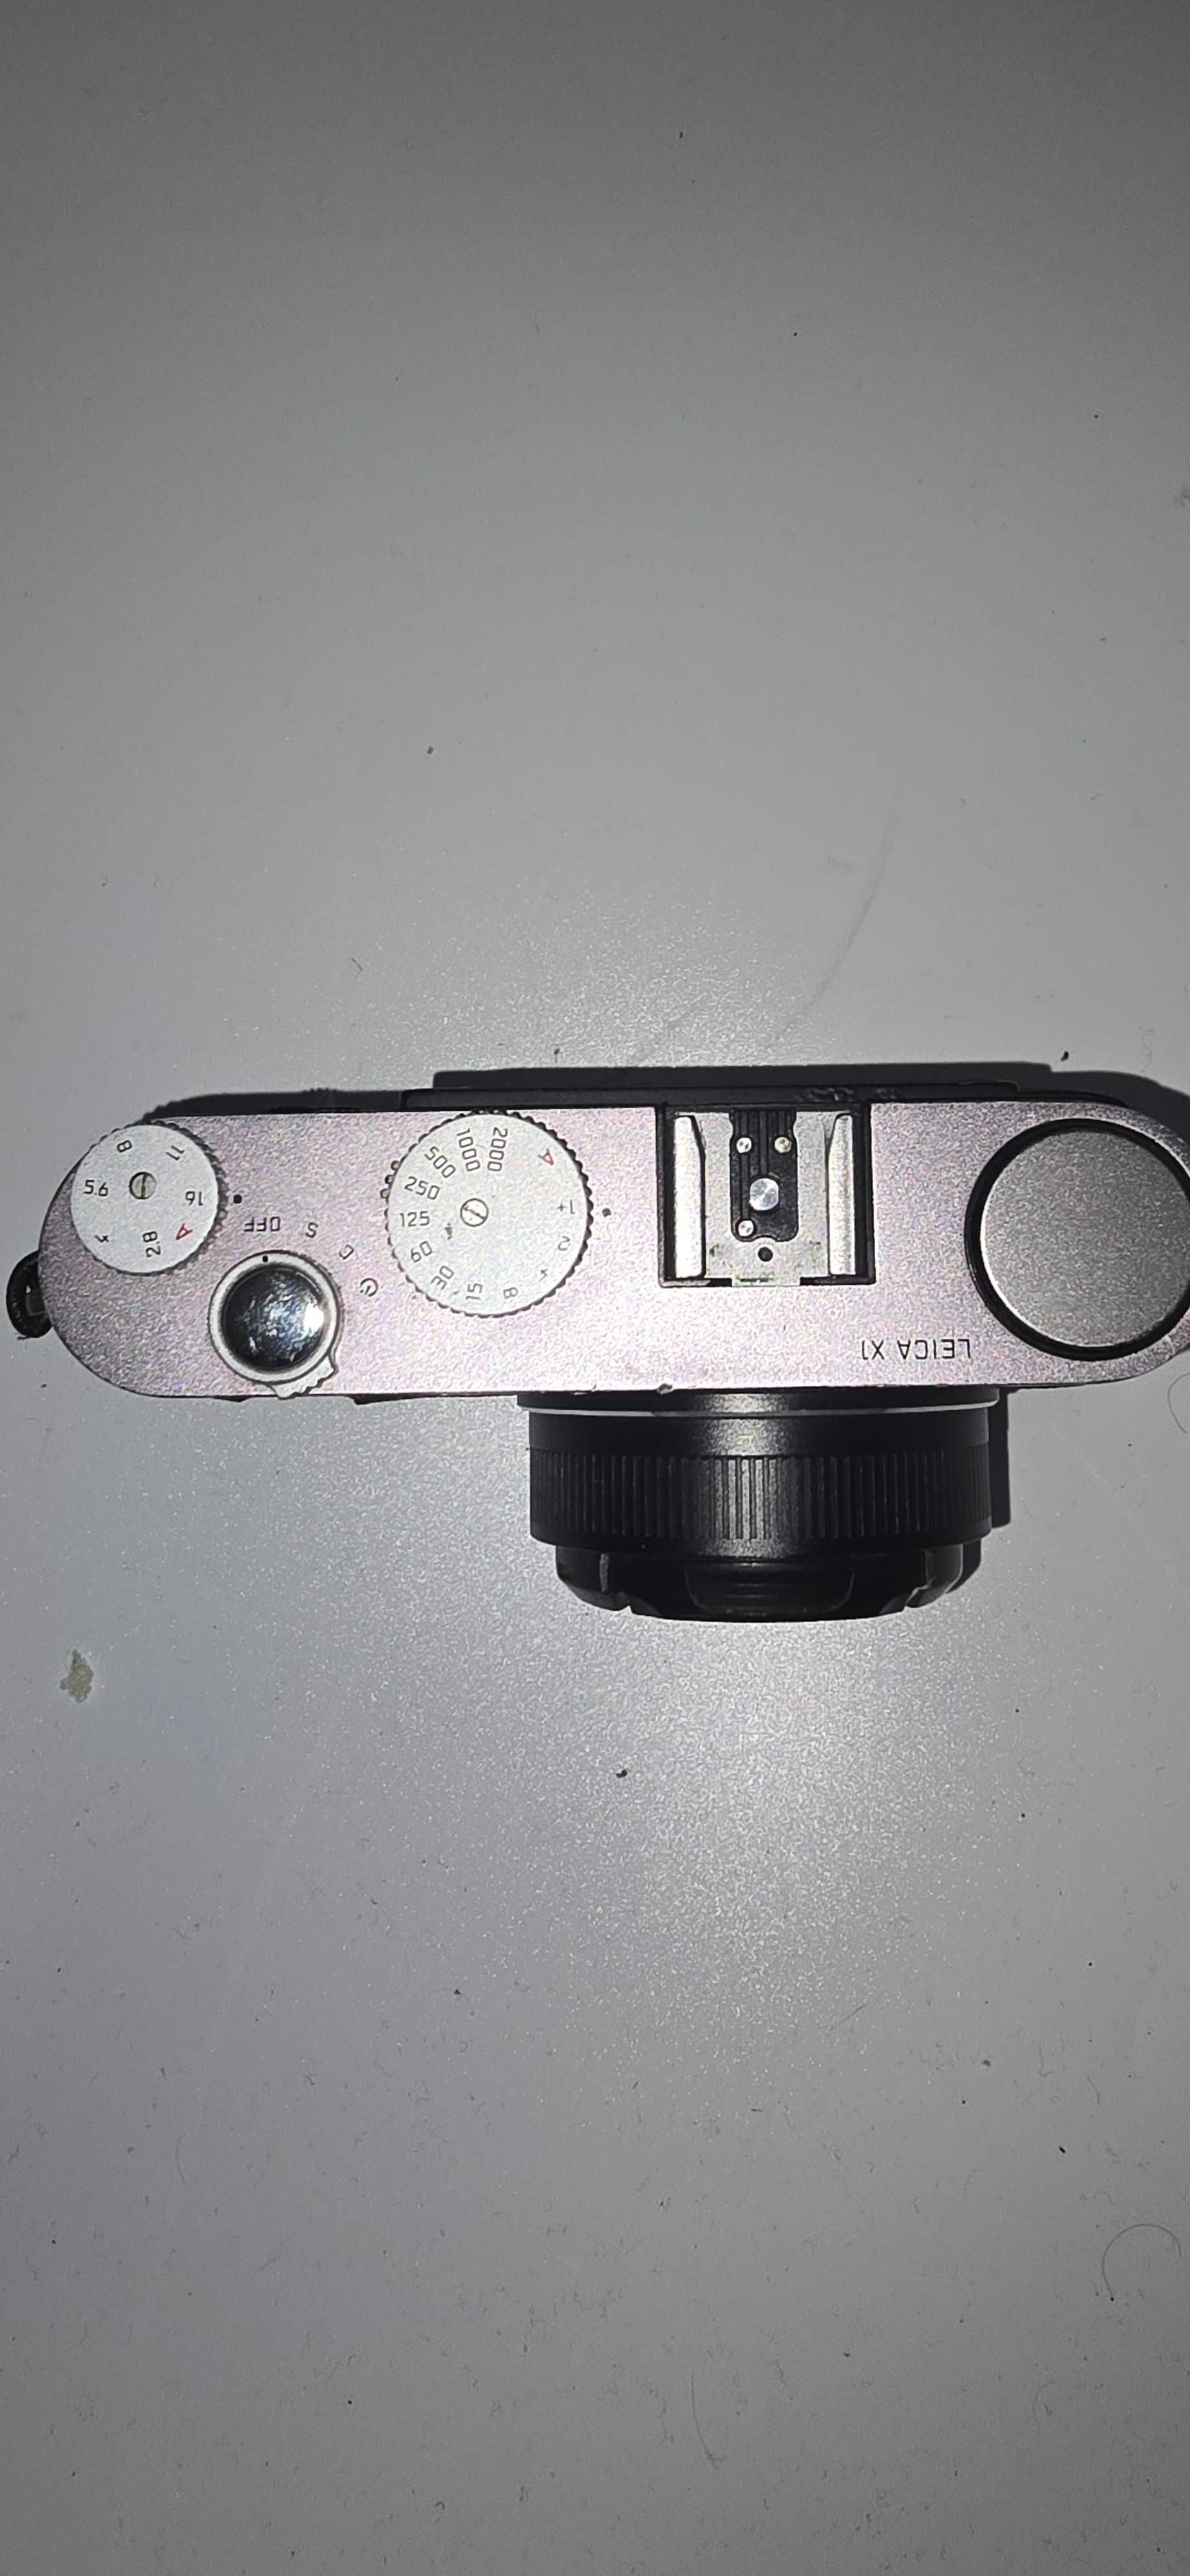 Aparat kompakt Leica X1